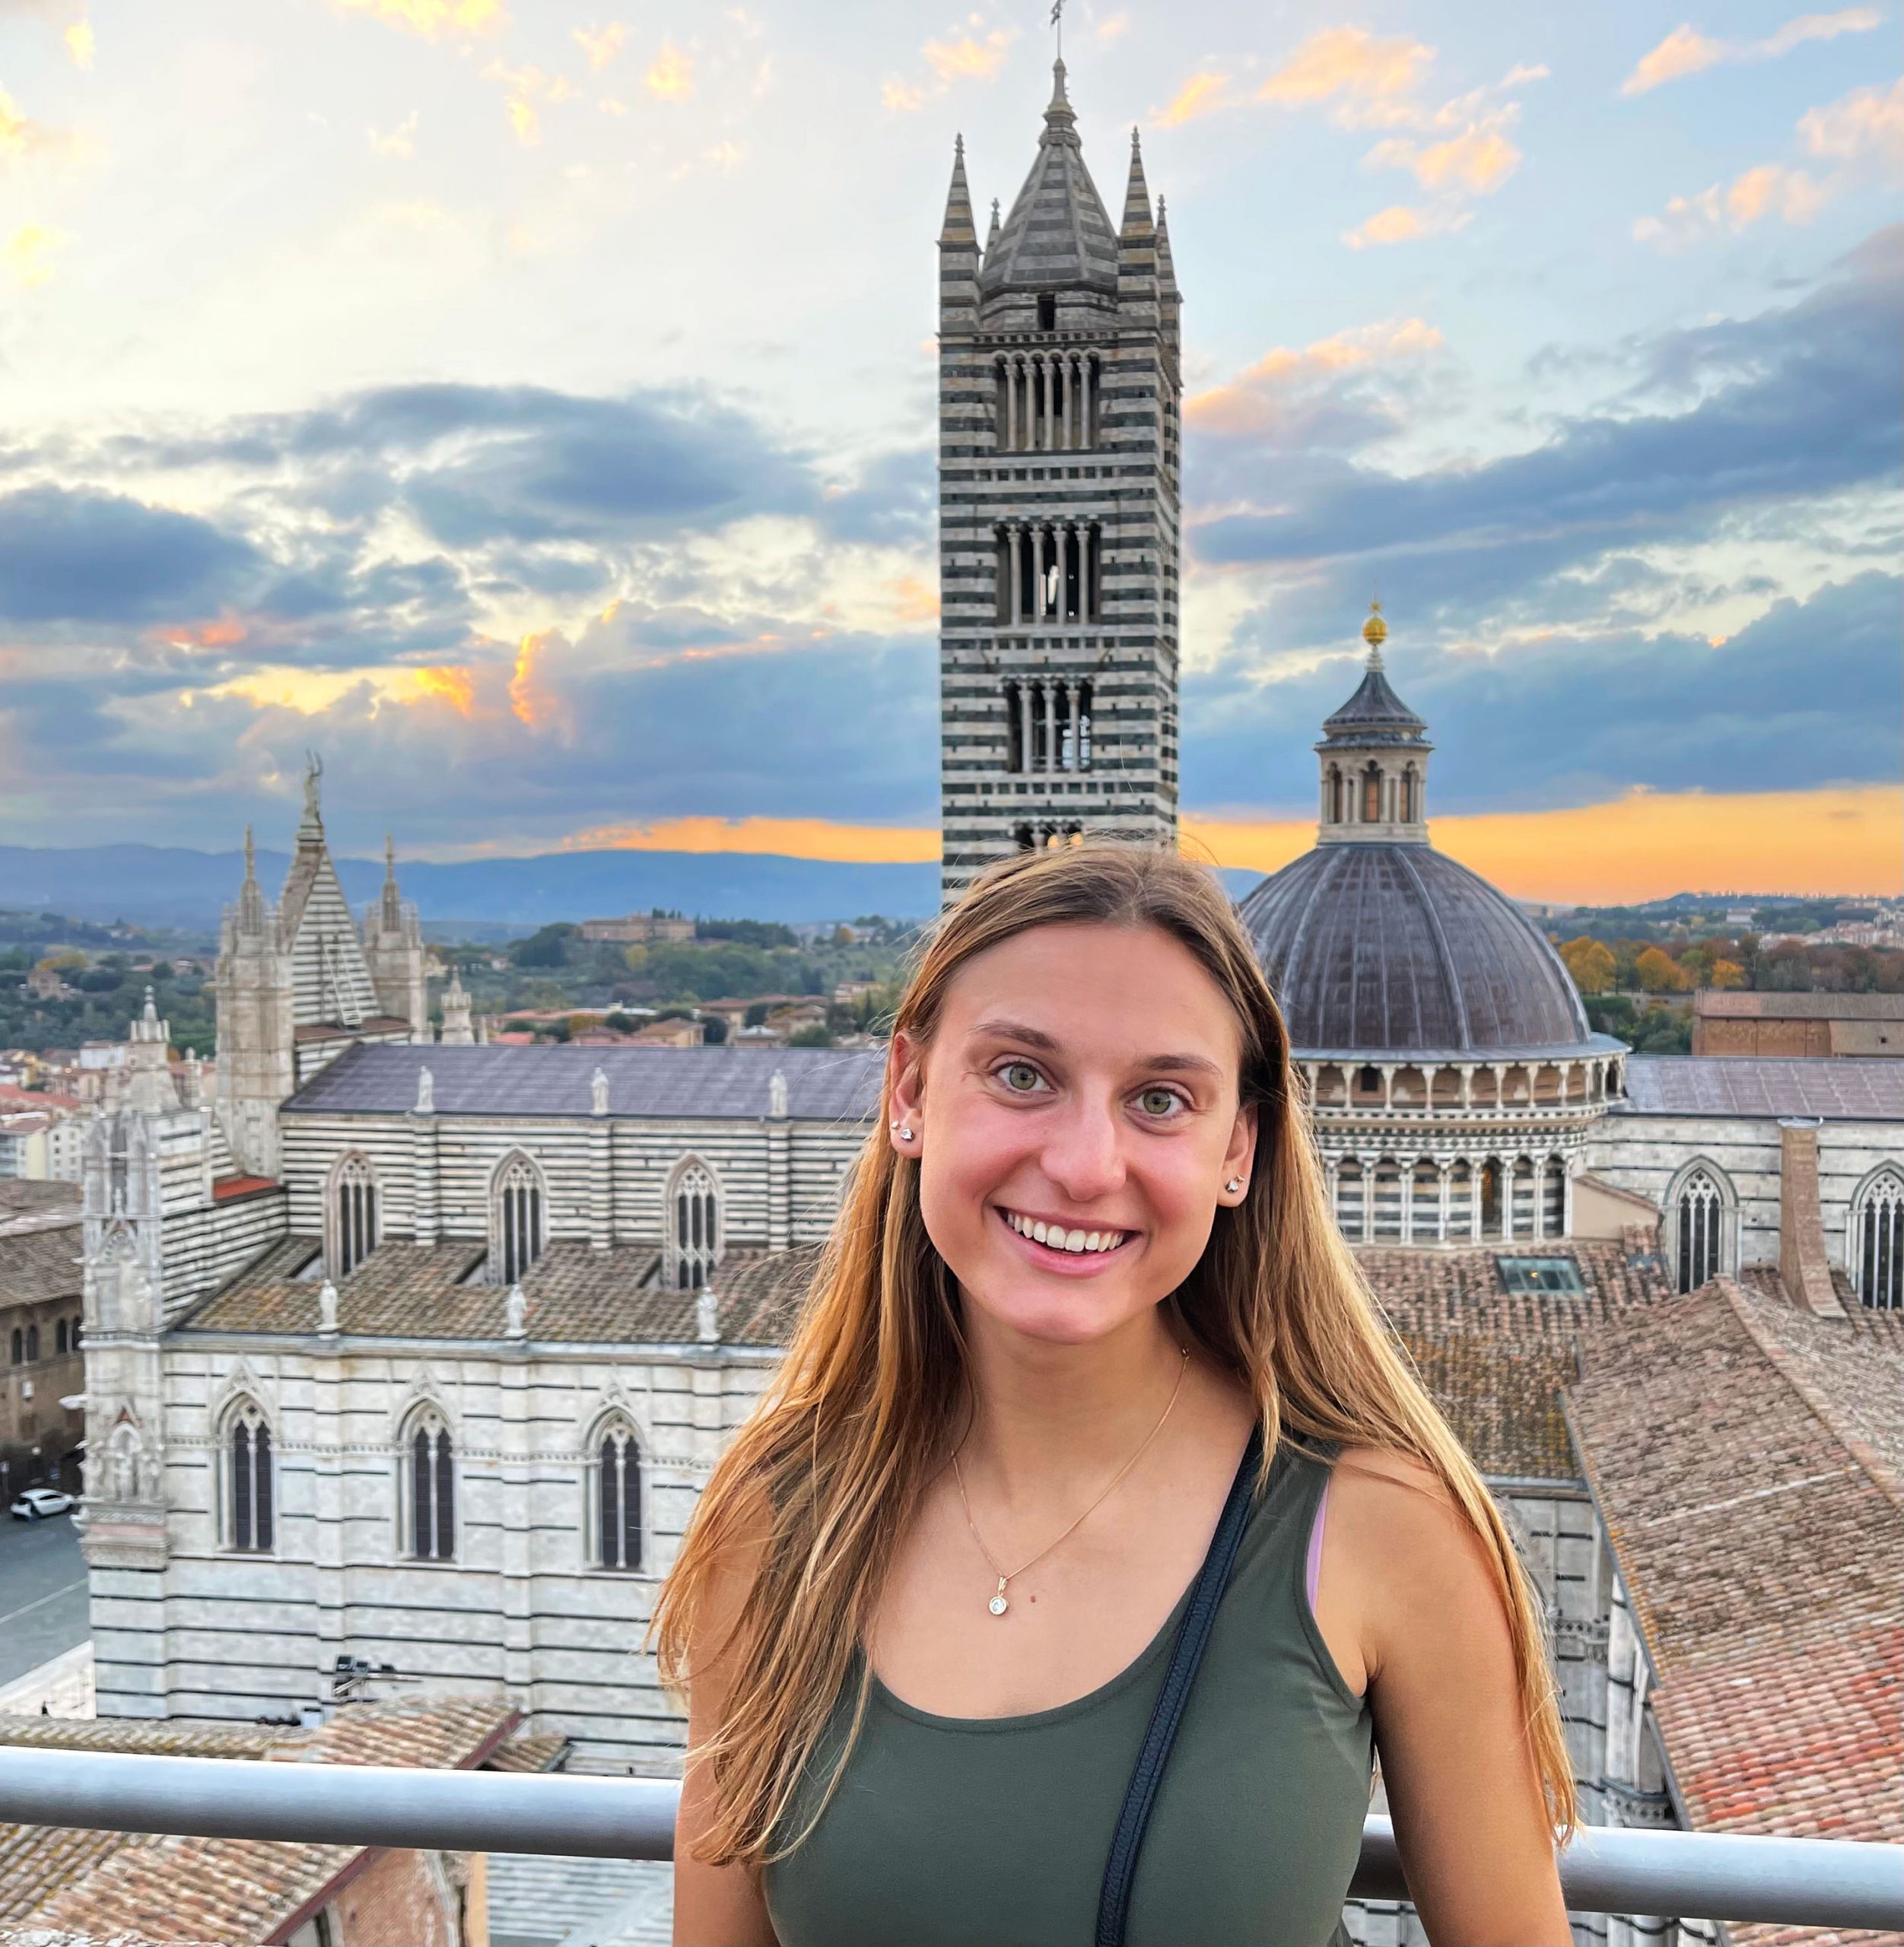 "Italy Siena Skyline" by Lauren Pawlowski